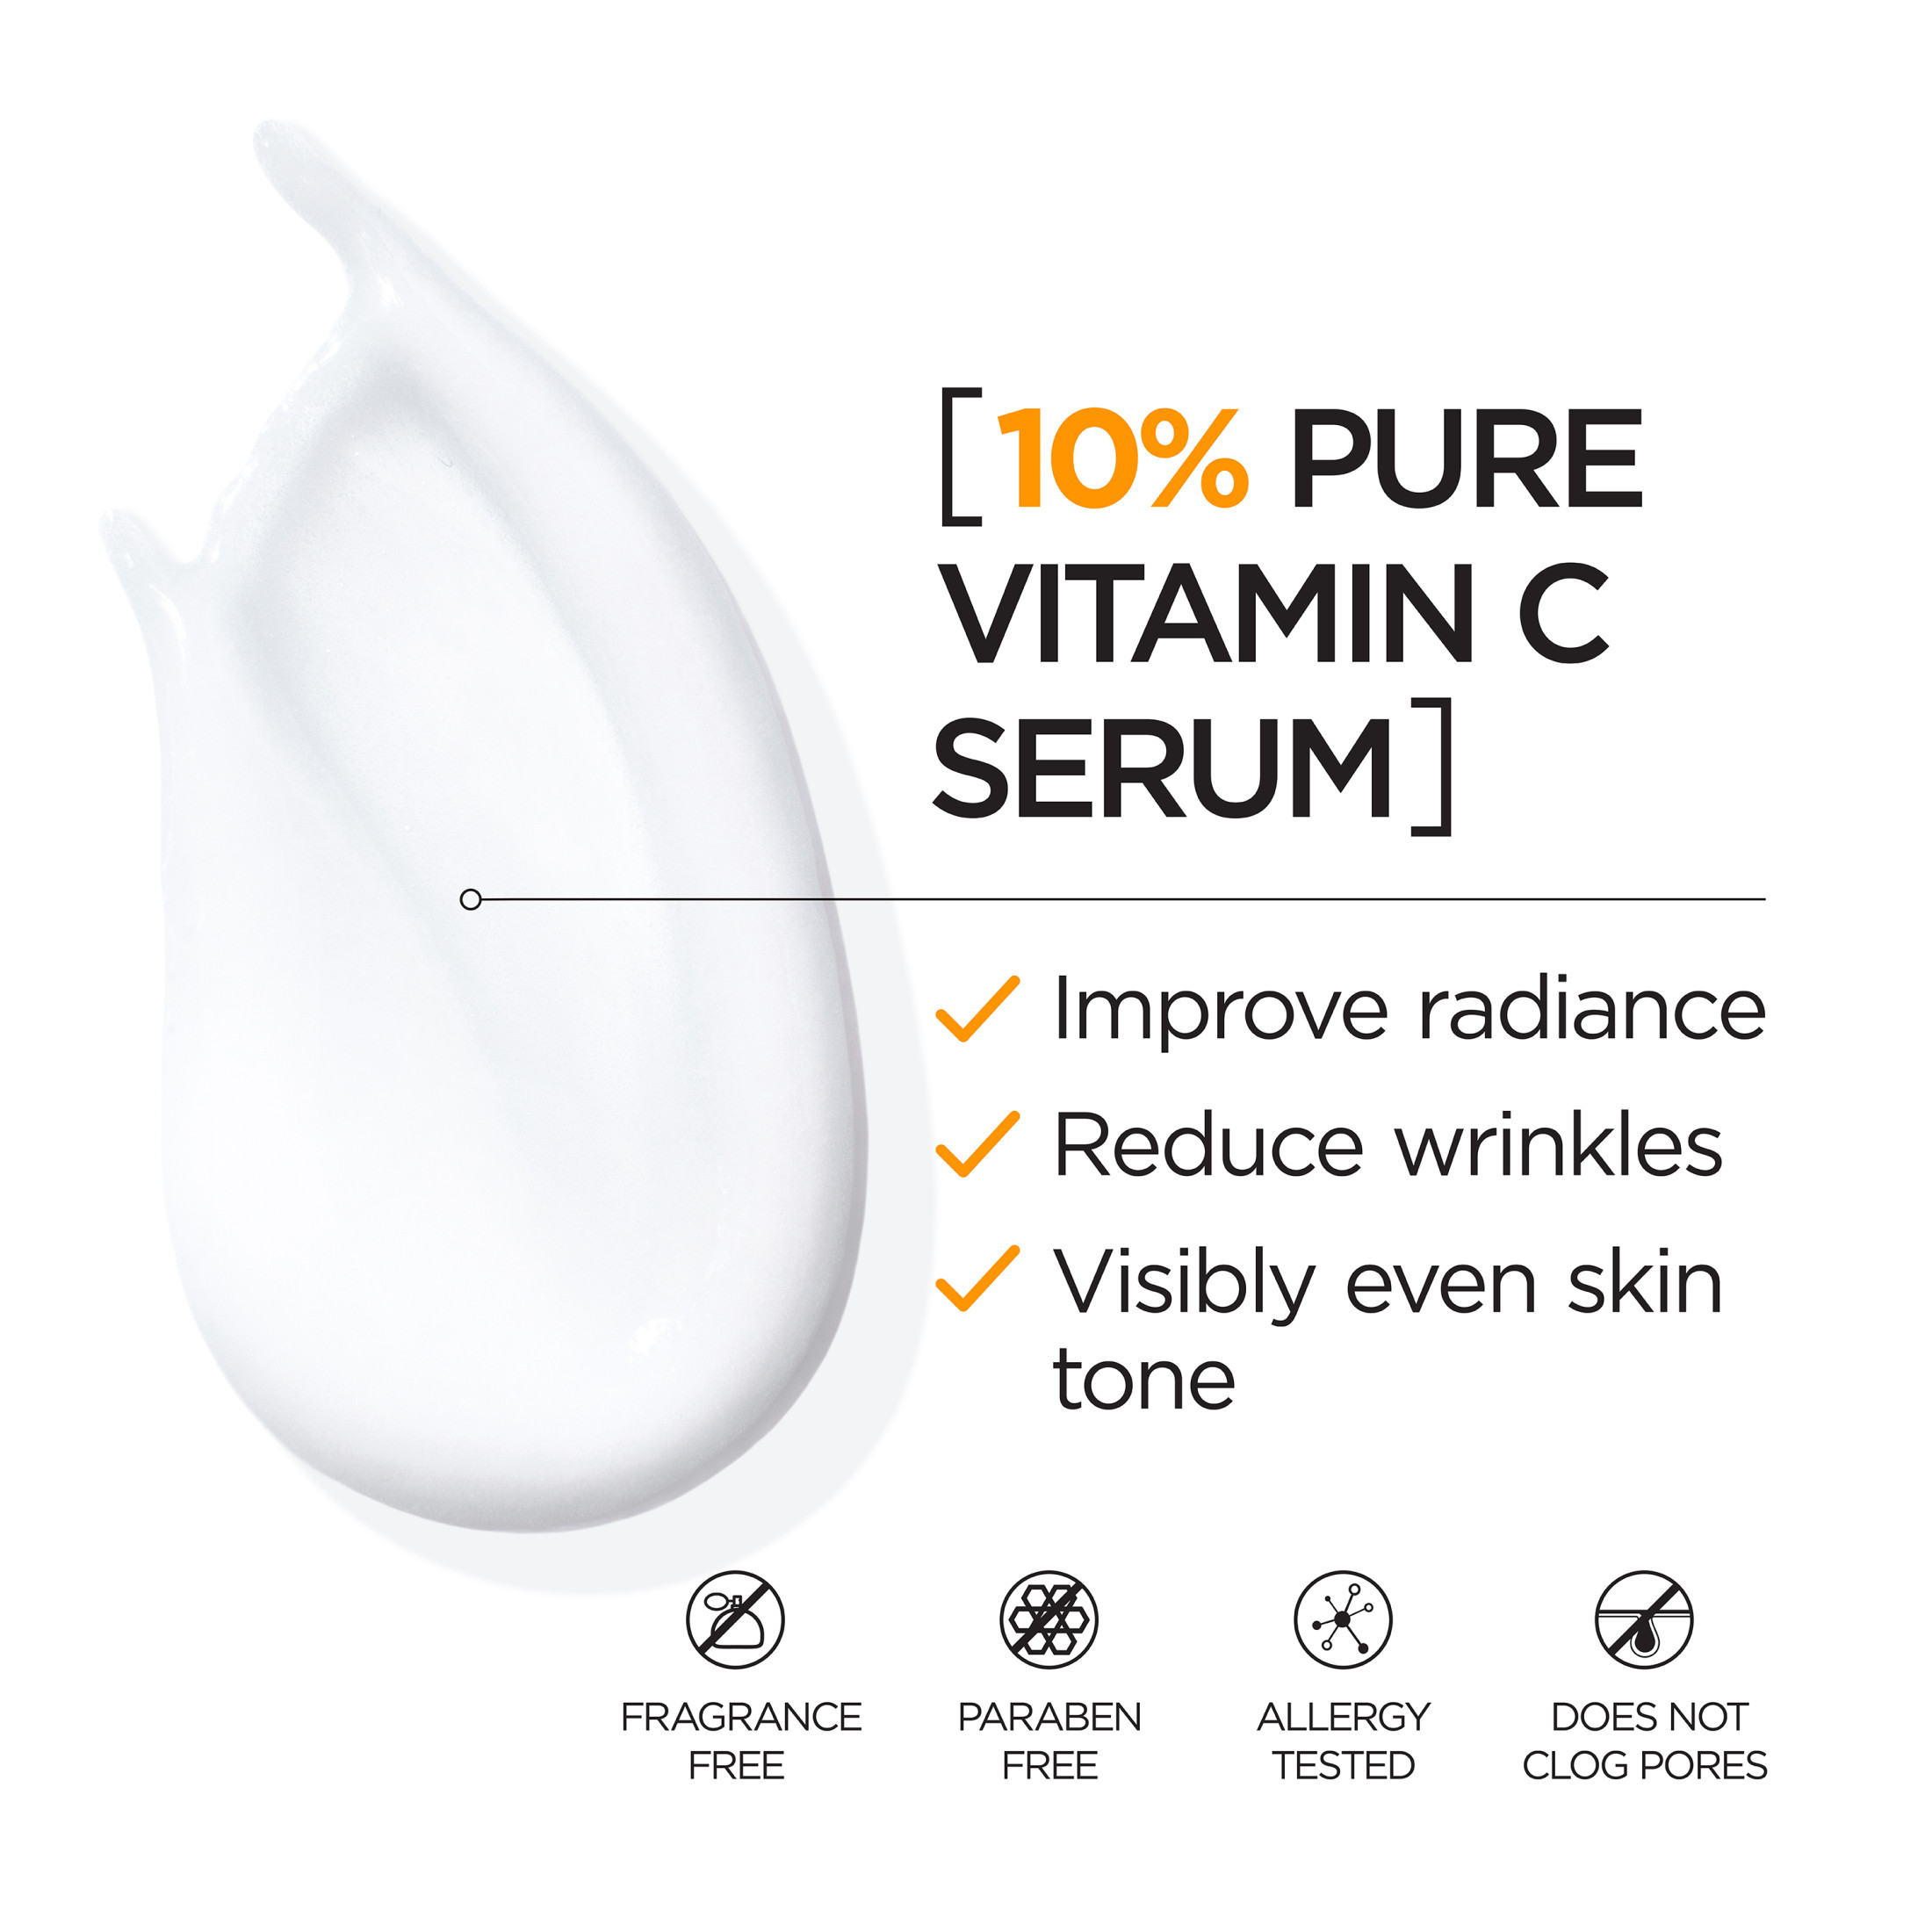 L'Oreal Paris Revitalift Pure Vitamin C Concentrate Serum, 1 fl oz - image 5 of 8